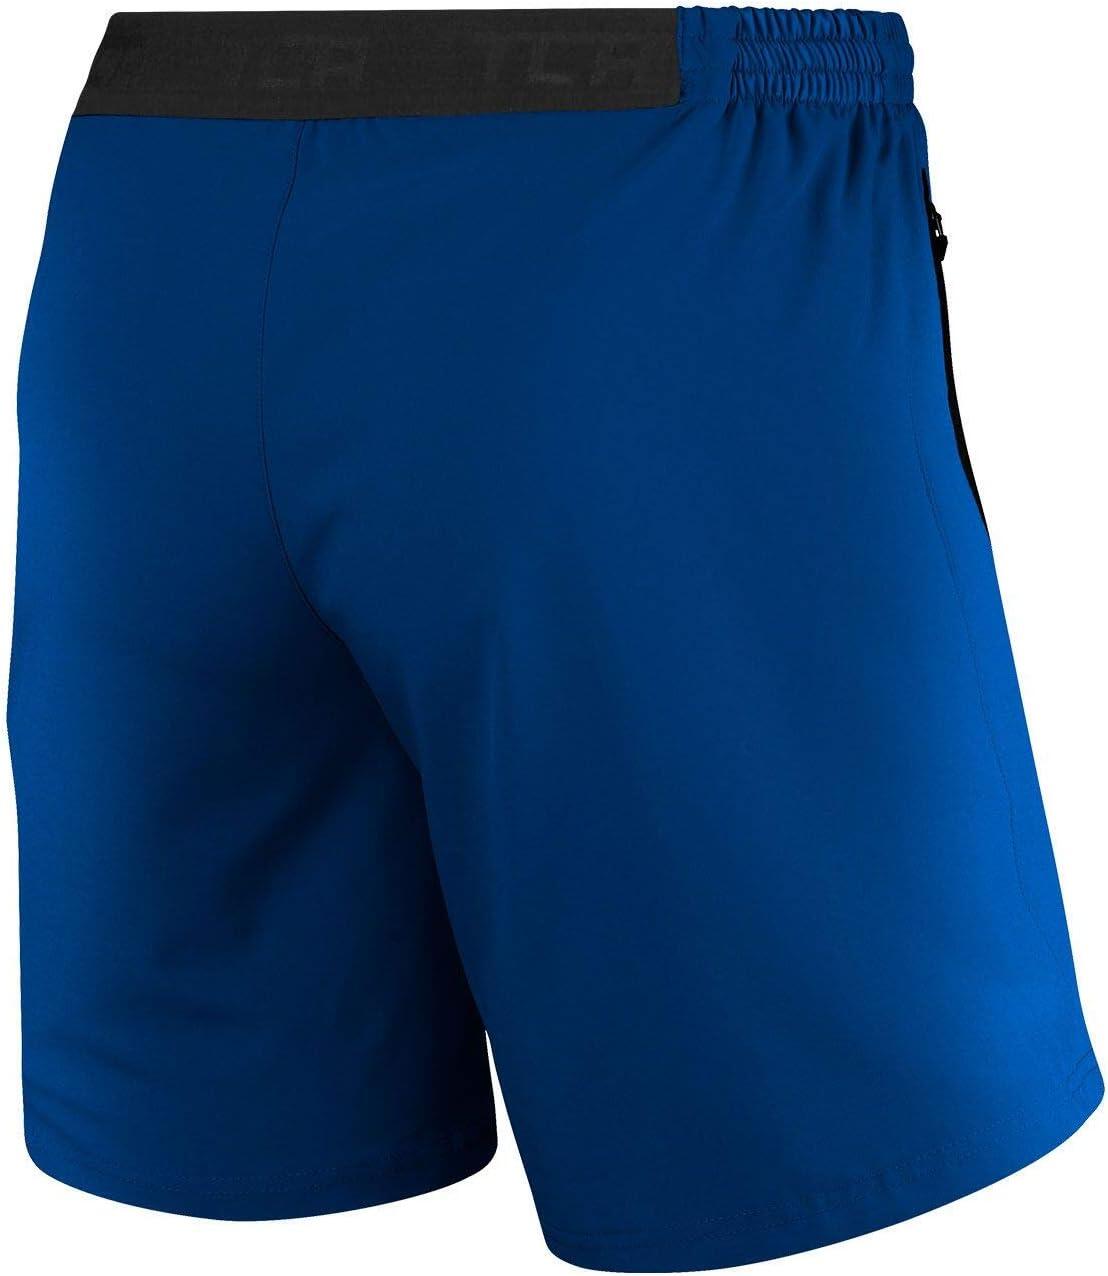 Men's Elite Tech Lightweight Running Shorts with Zip Pockets - Mazarine Blue 2/6